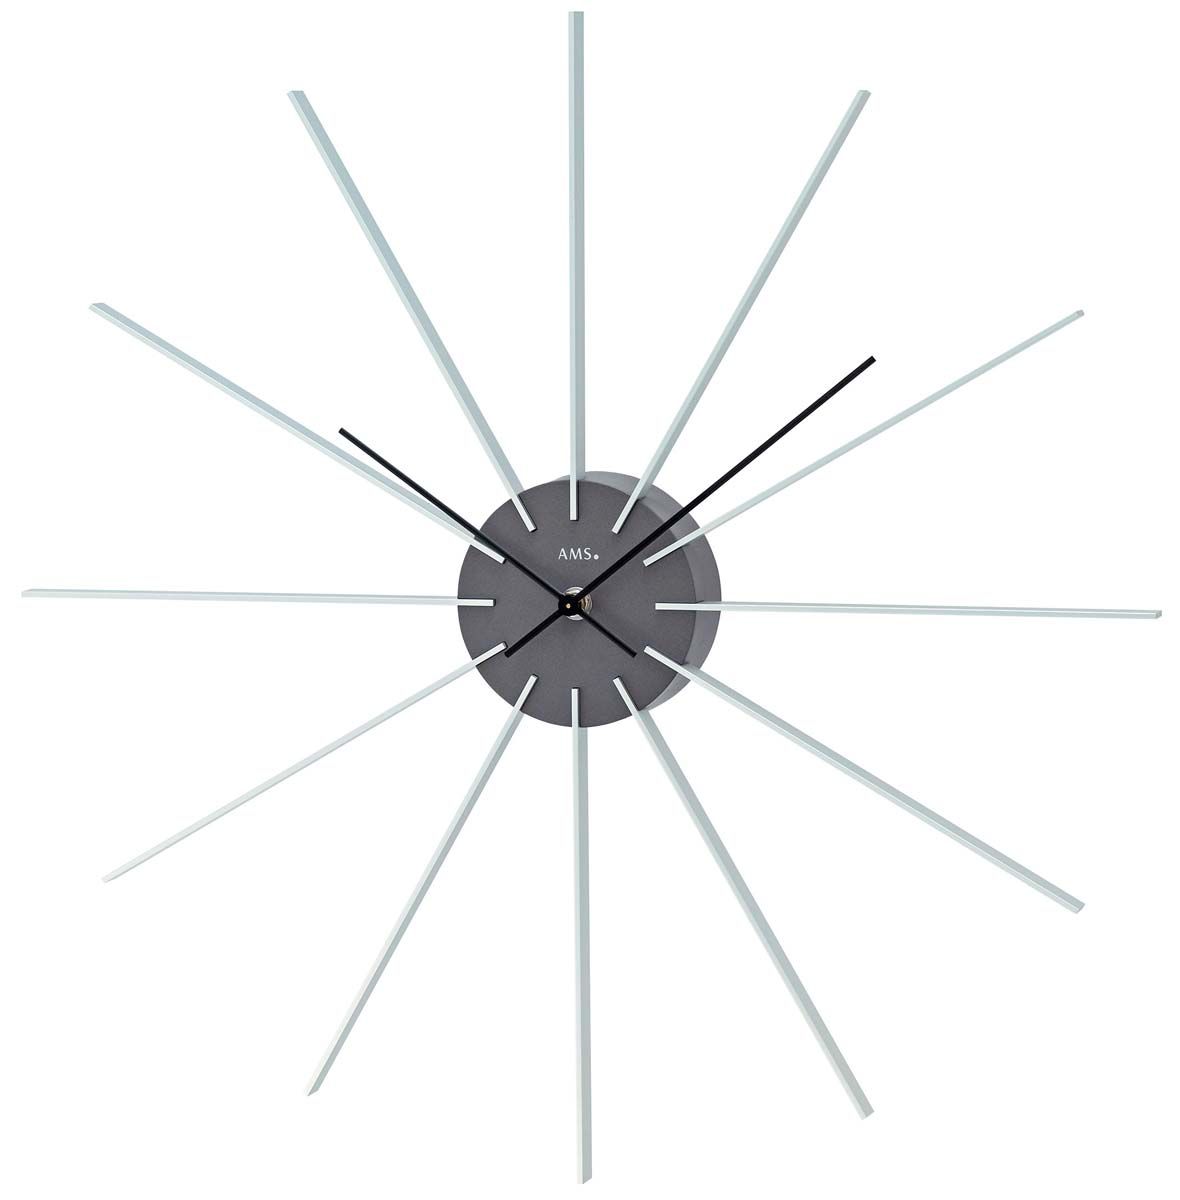 Nástěnné hodiny moderní na zeď ams 9595 motiv sluníčko